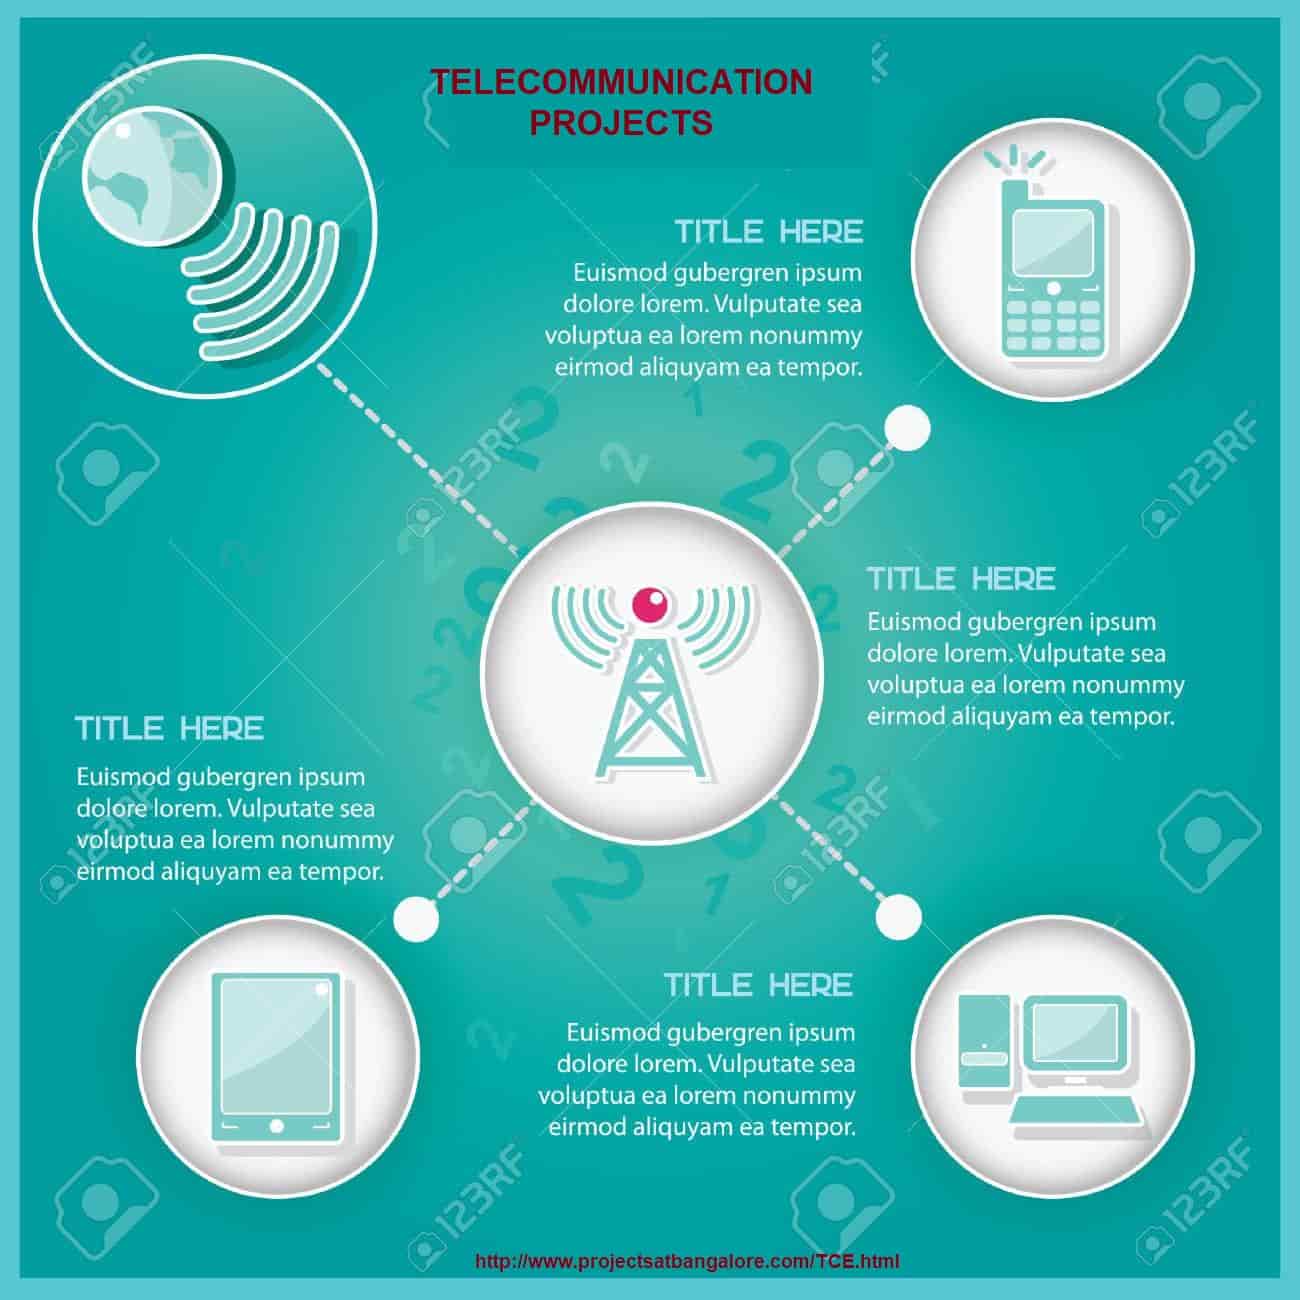 telecommunication-projects